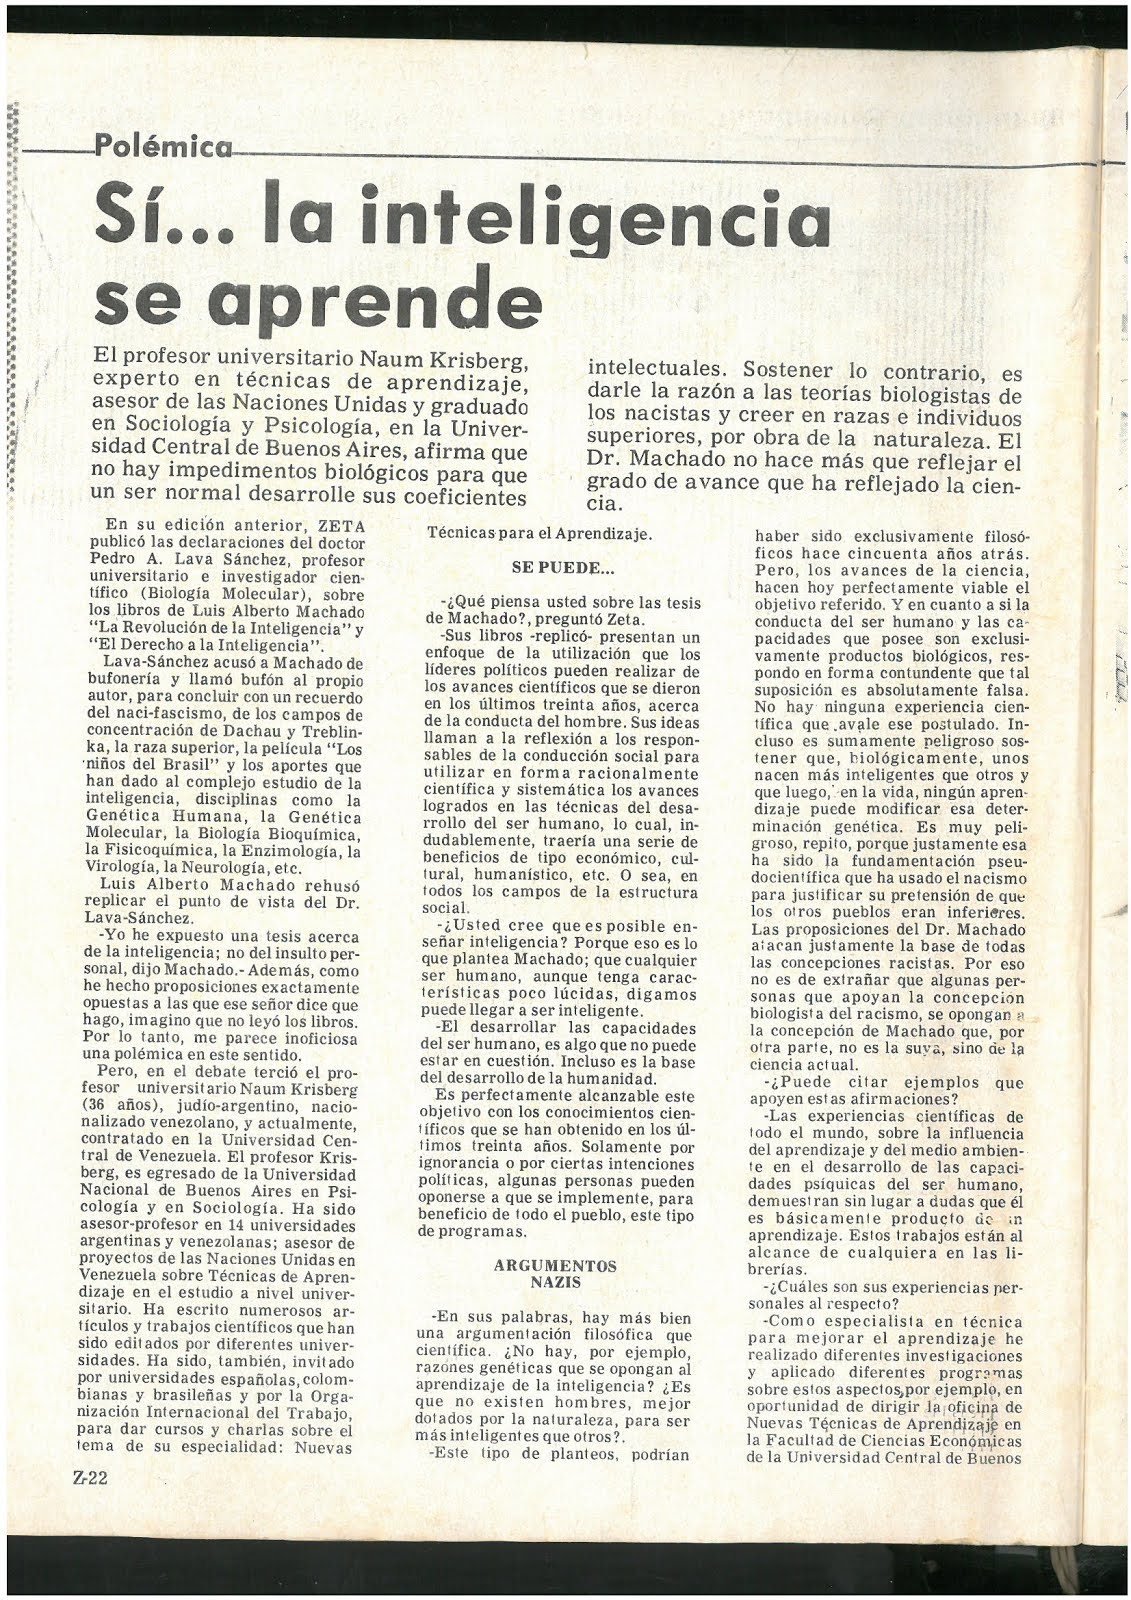 20 - Revista Zeta. Caracas. Venezuela. 18/02/1979. En este extenso reportaje de 3 páginas a